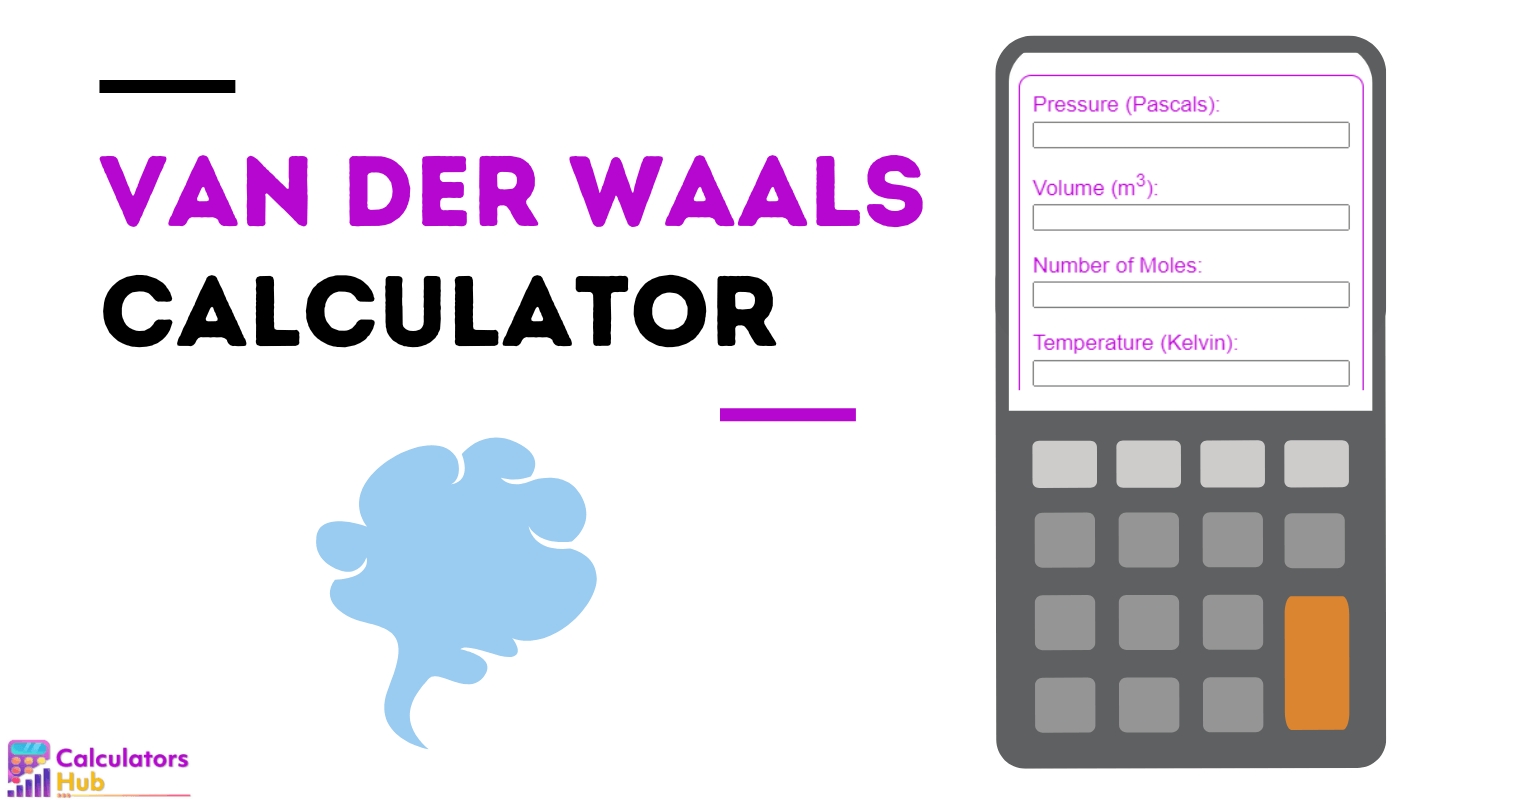 Van der Waals Calculator